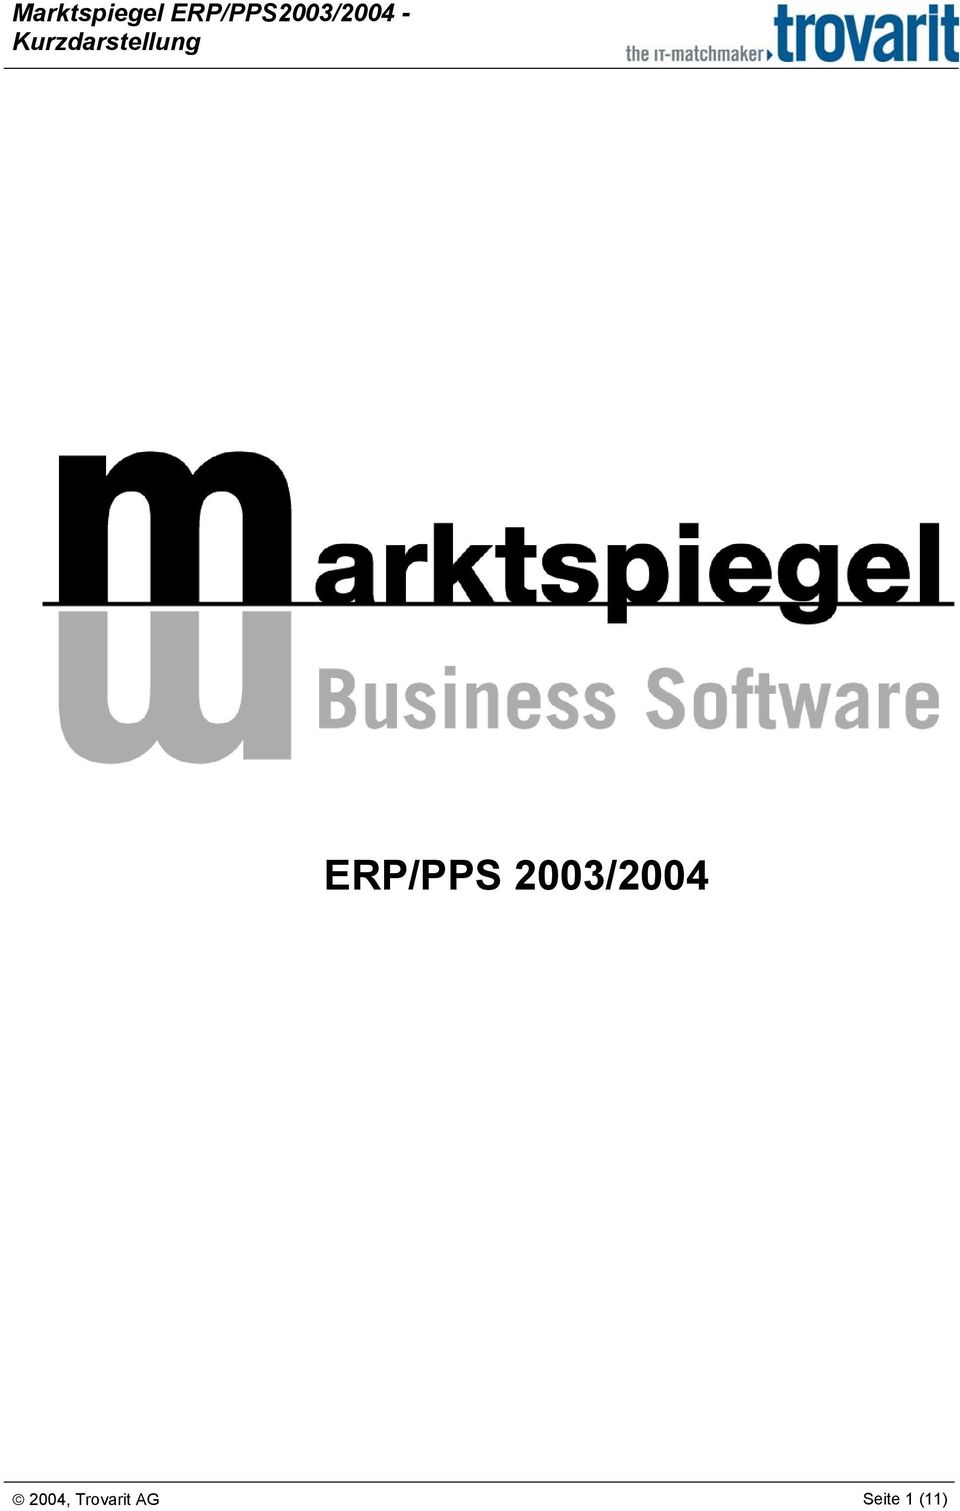 Kurzdarstellung ERP/PPS